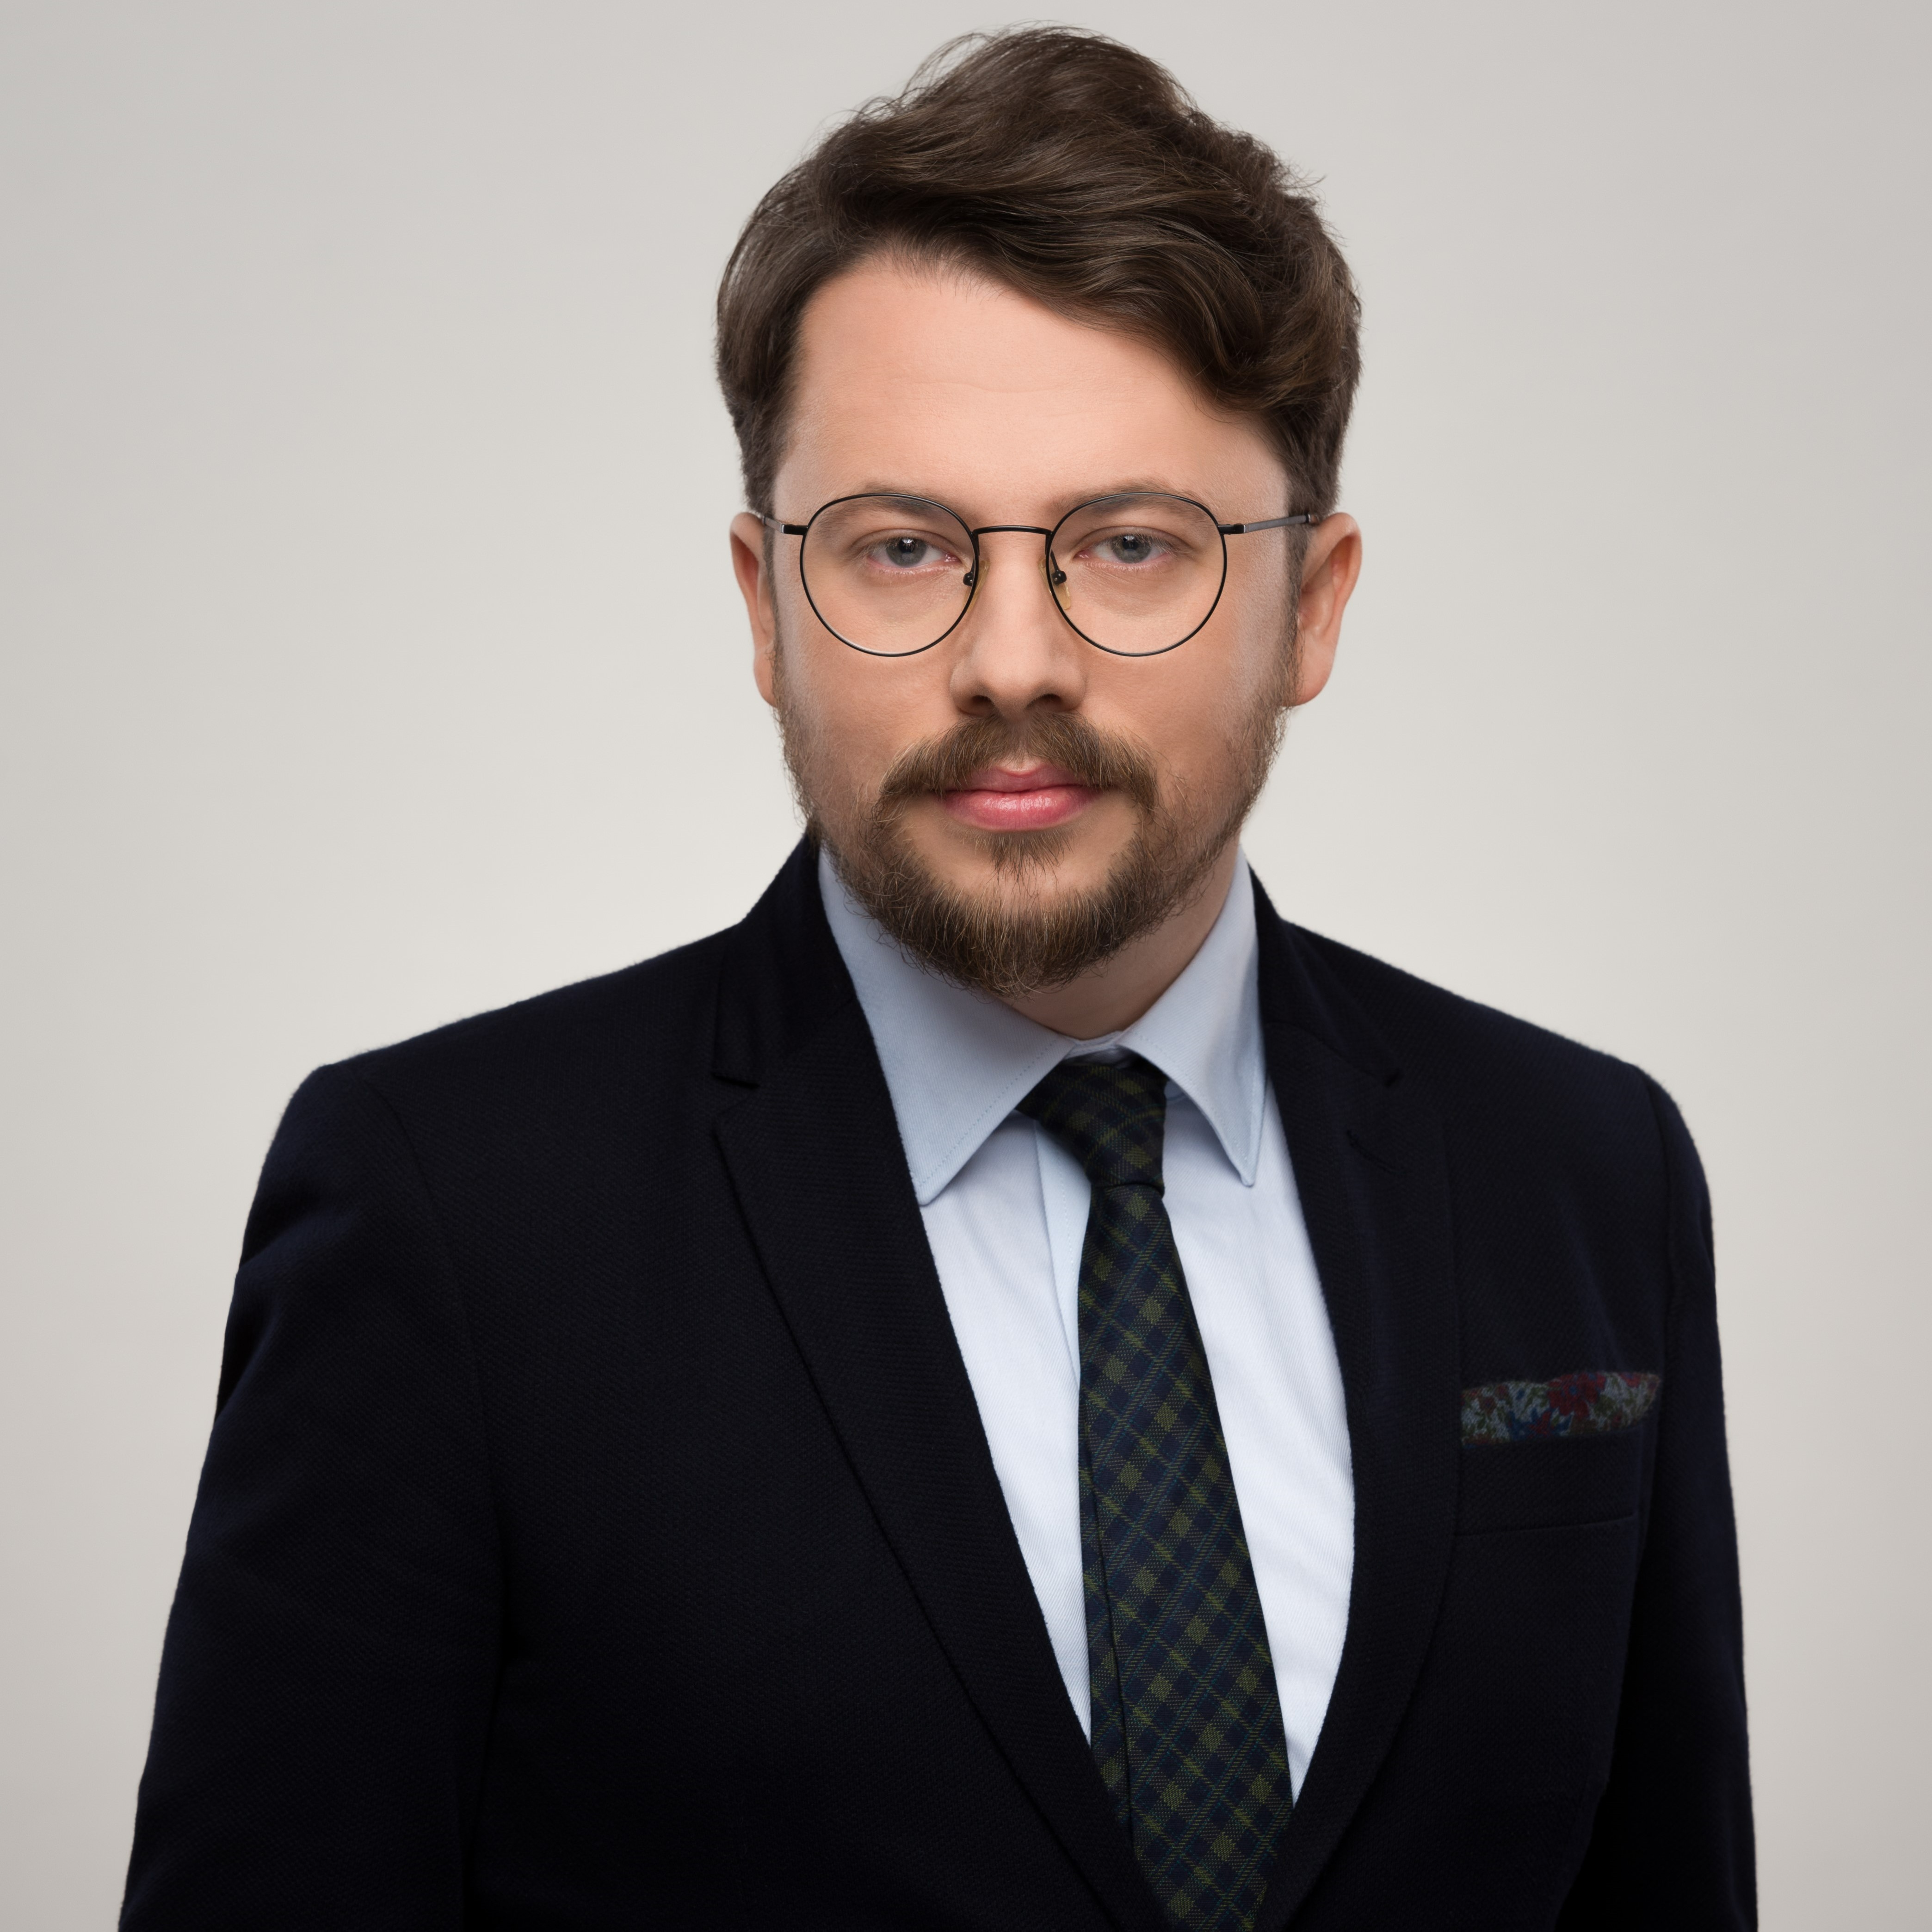 Profile image of Dr Konrad Bielecki